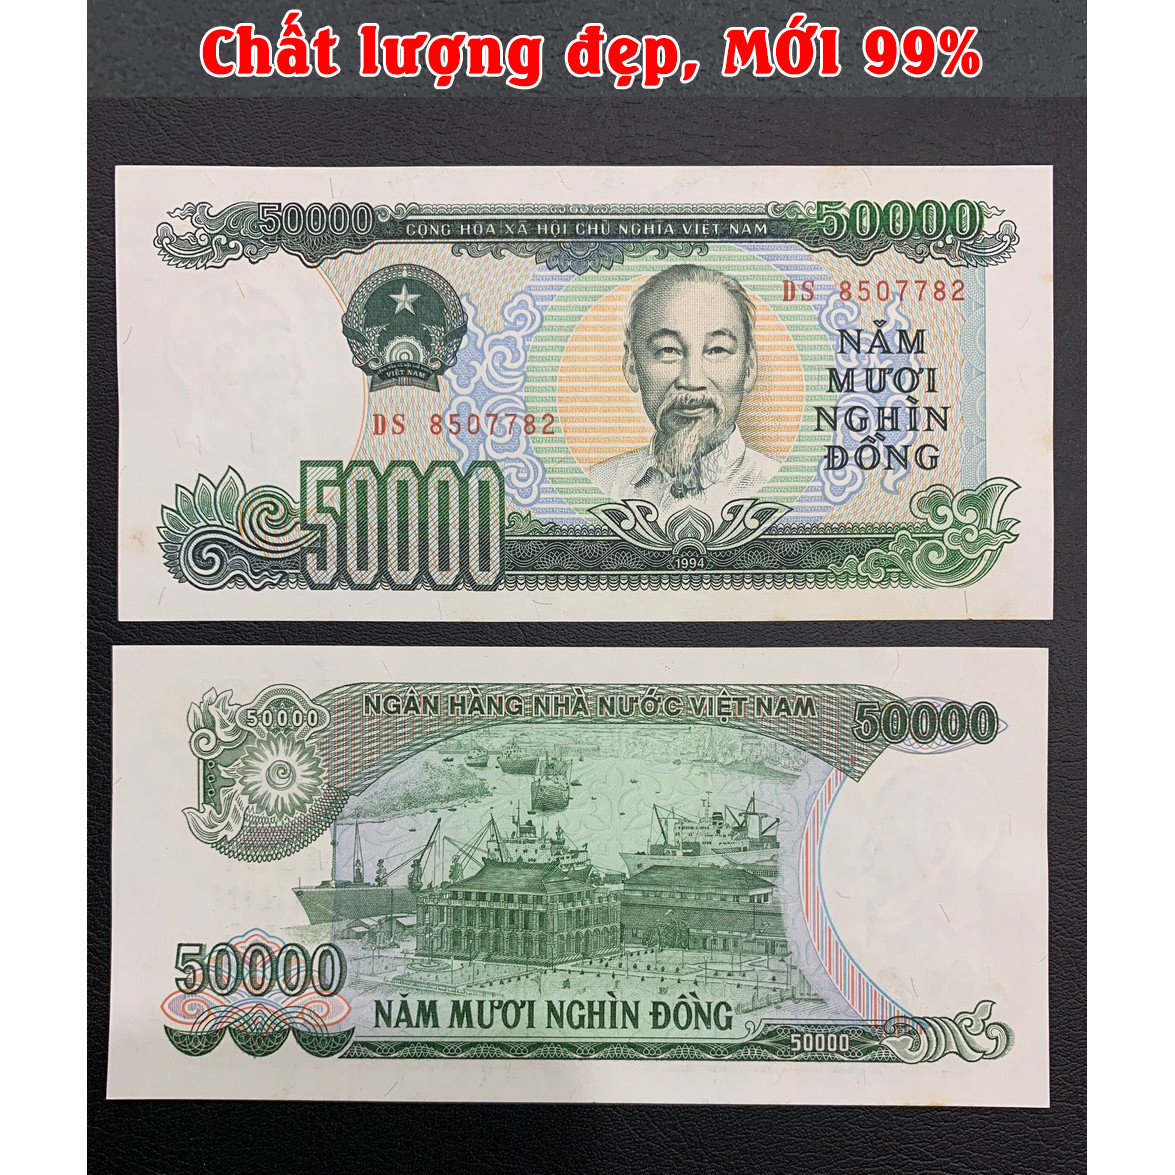 Tiền 50 Nghìn giấy 1994 [MỚI 99%] tiền giấy cotton xanh lá ngày xưa